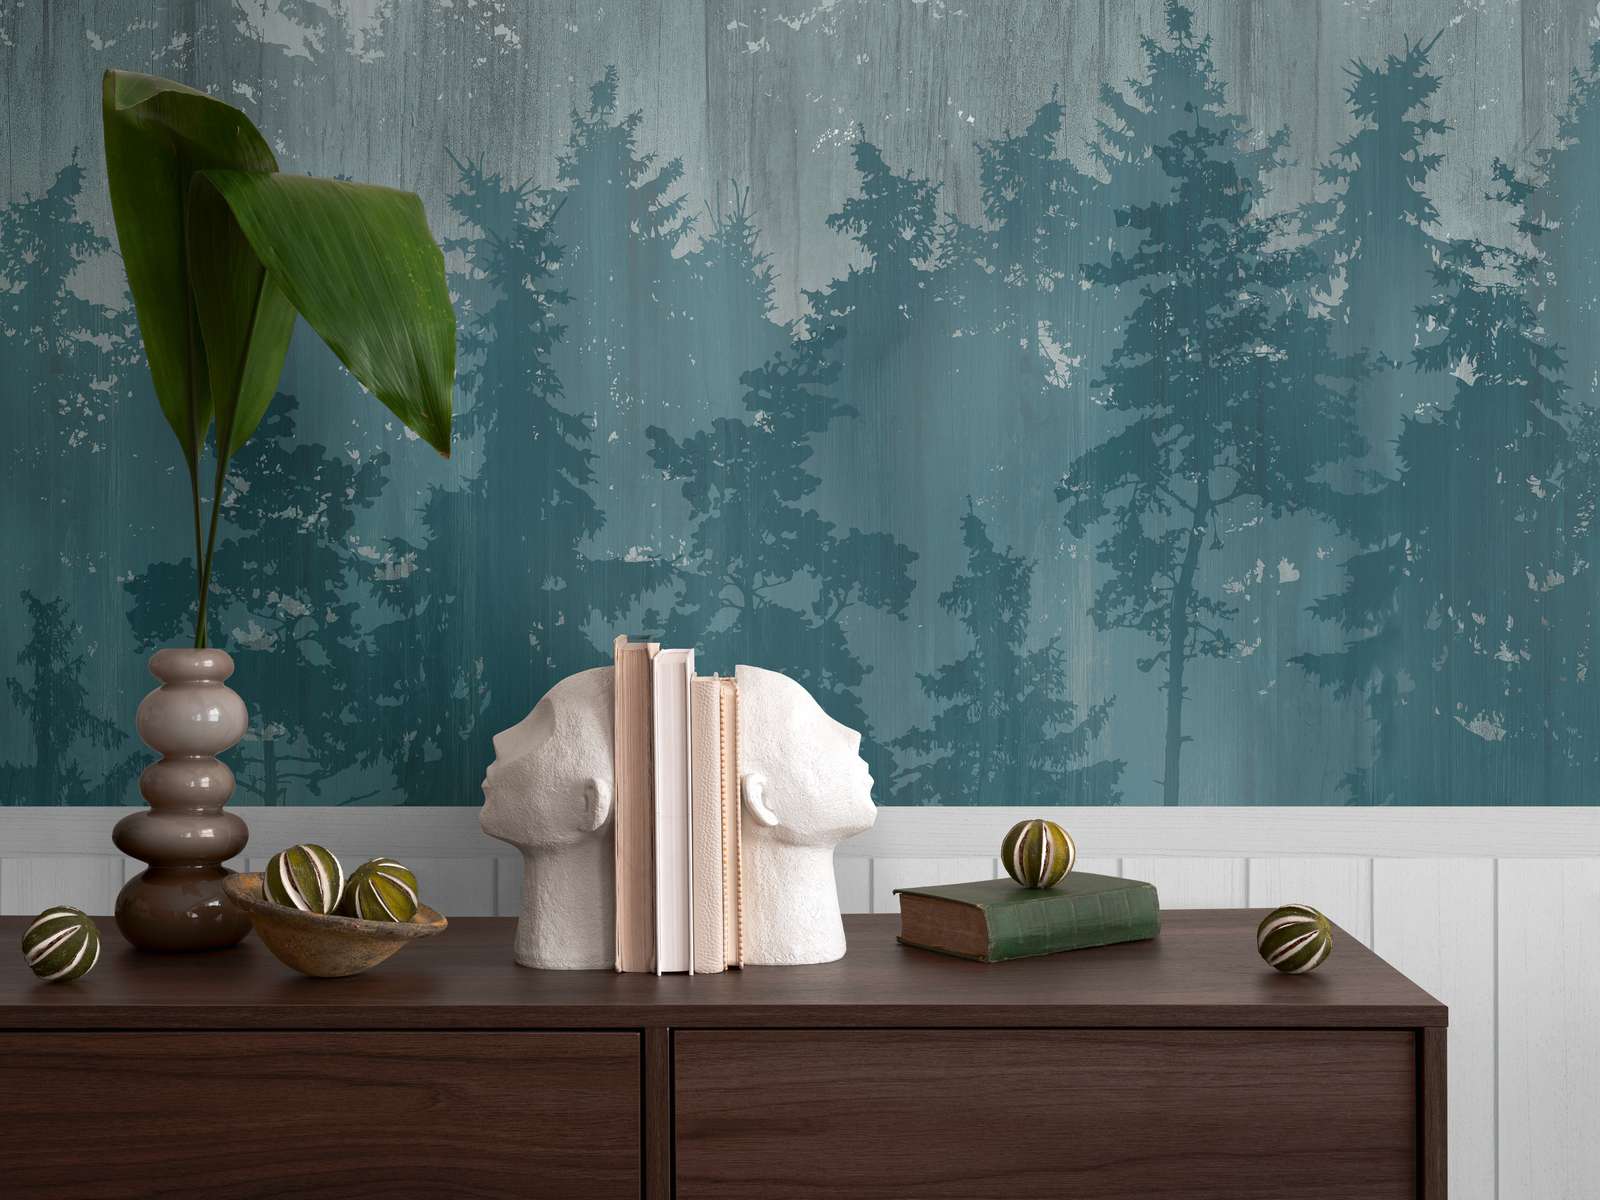             Onderlaag behang met vliesmotief, plintrand met houteffect en bosmotief - wit, turquoise
        